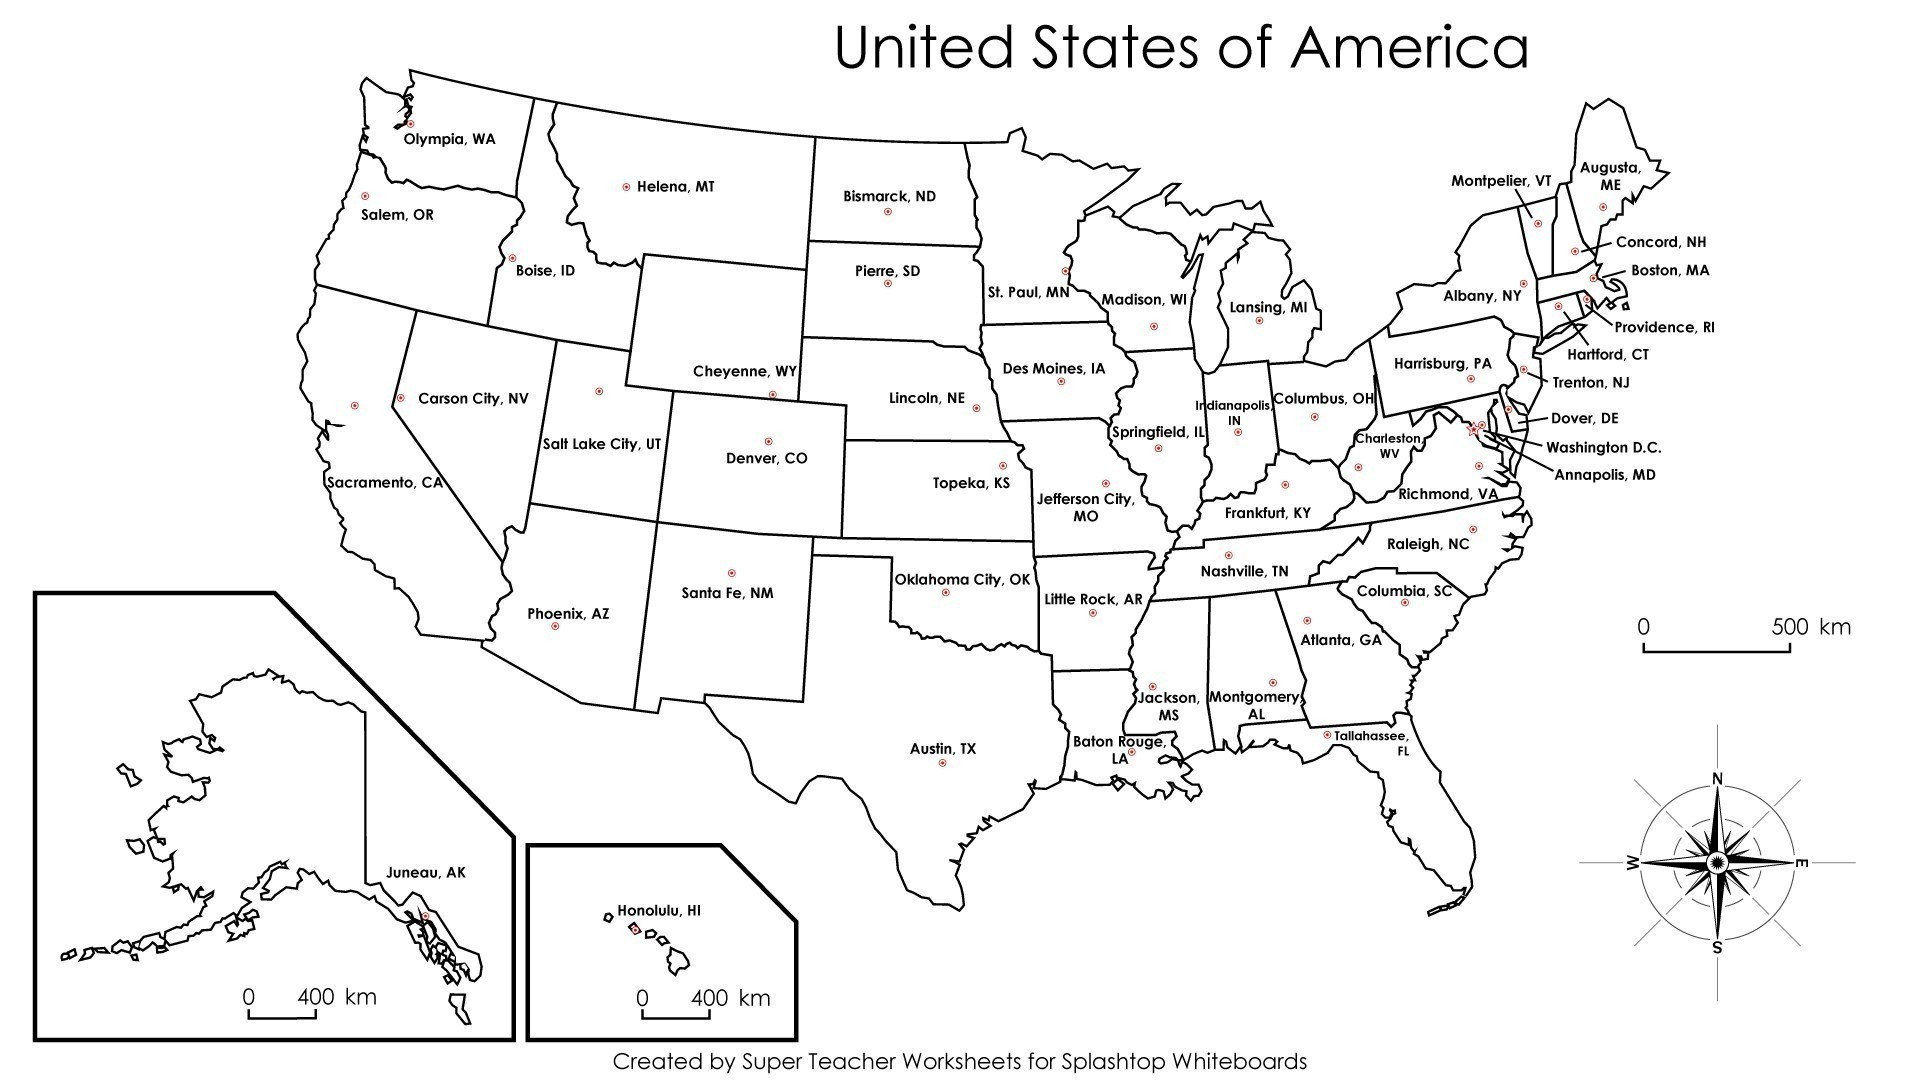 Free Printable Us Highway Map Usa 081919 Fresh United States Map - Map Of United States Without State Names Printable